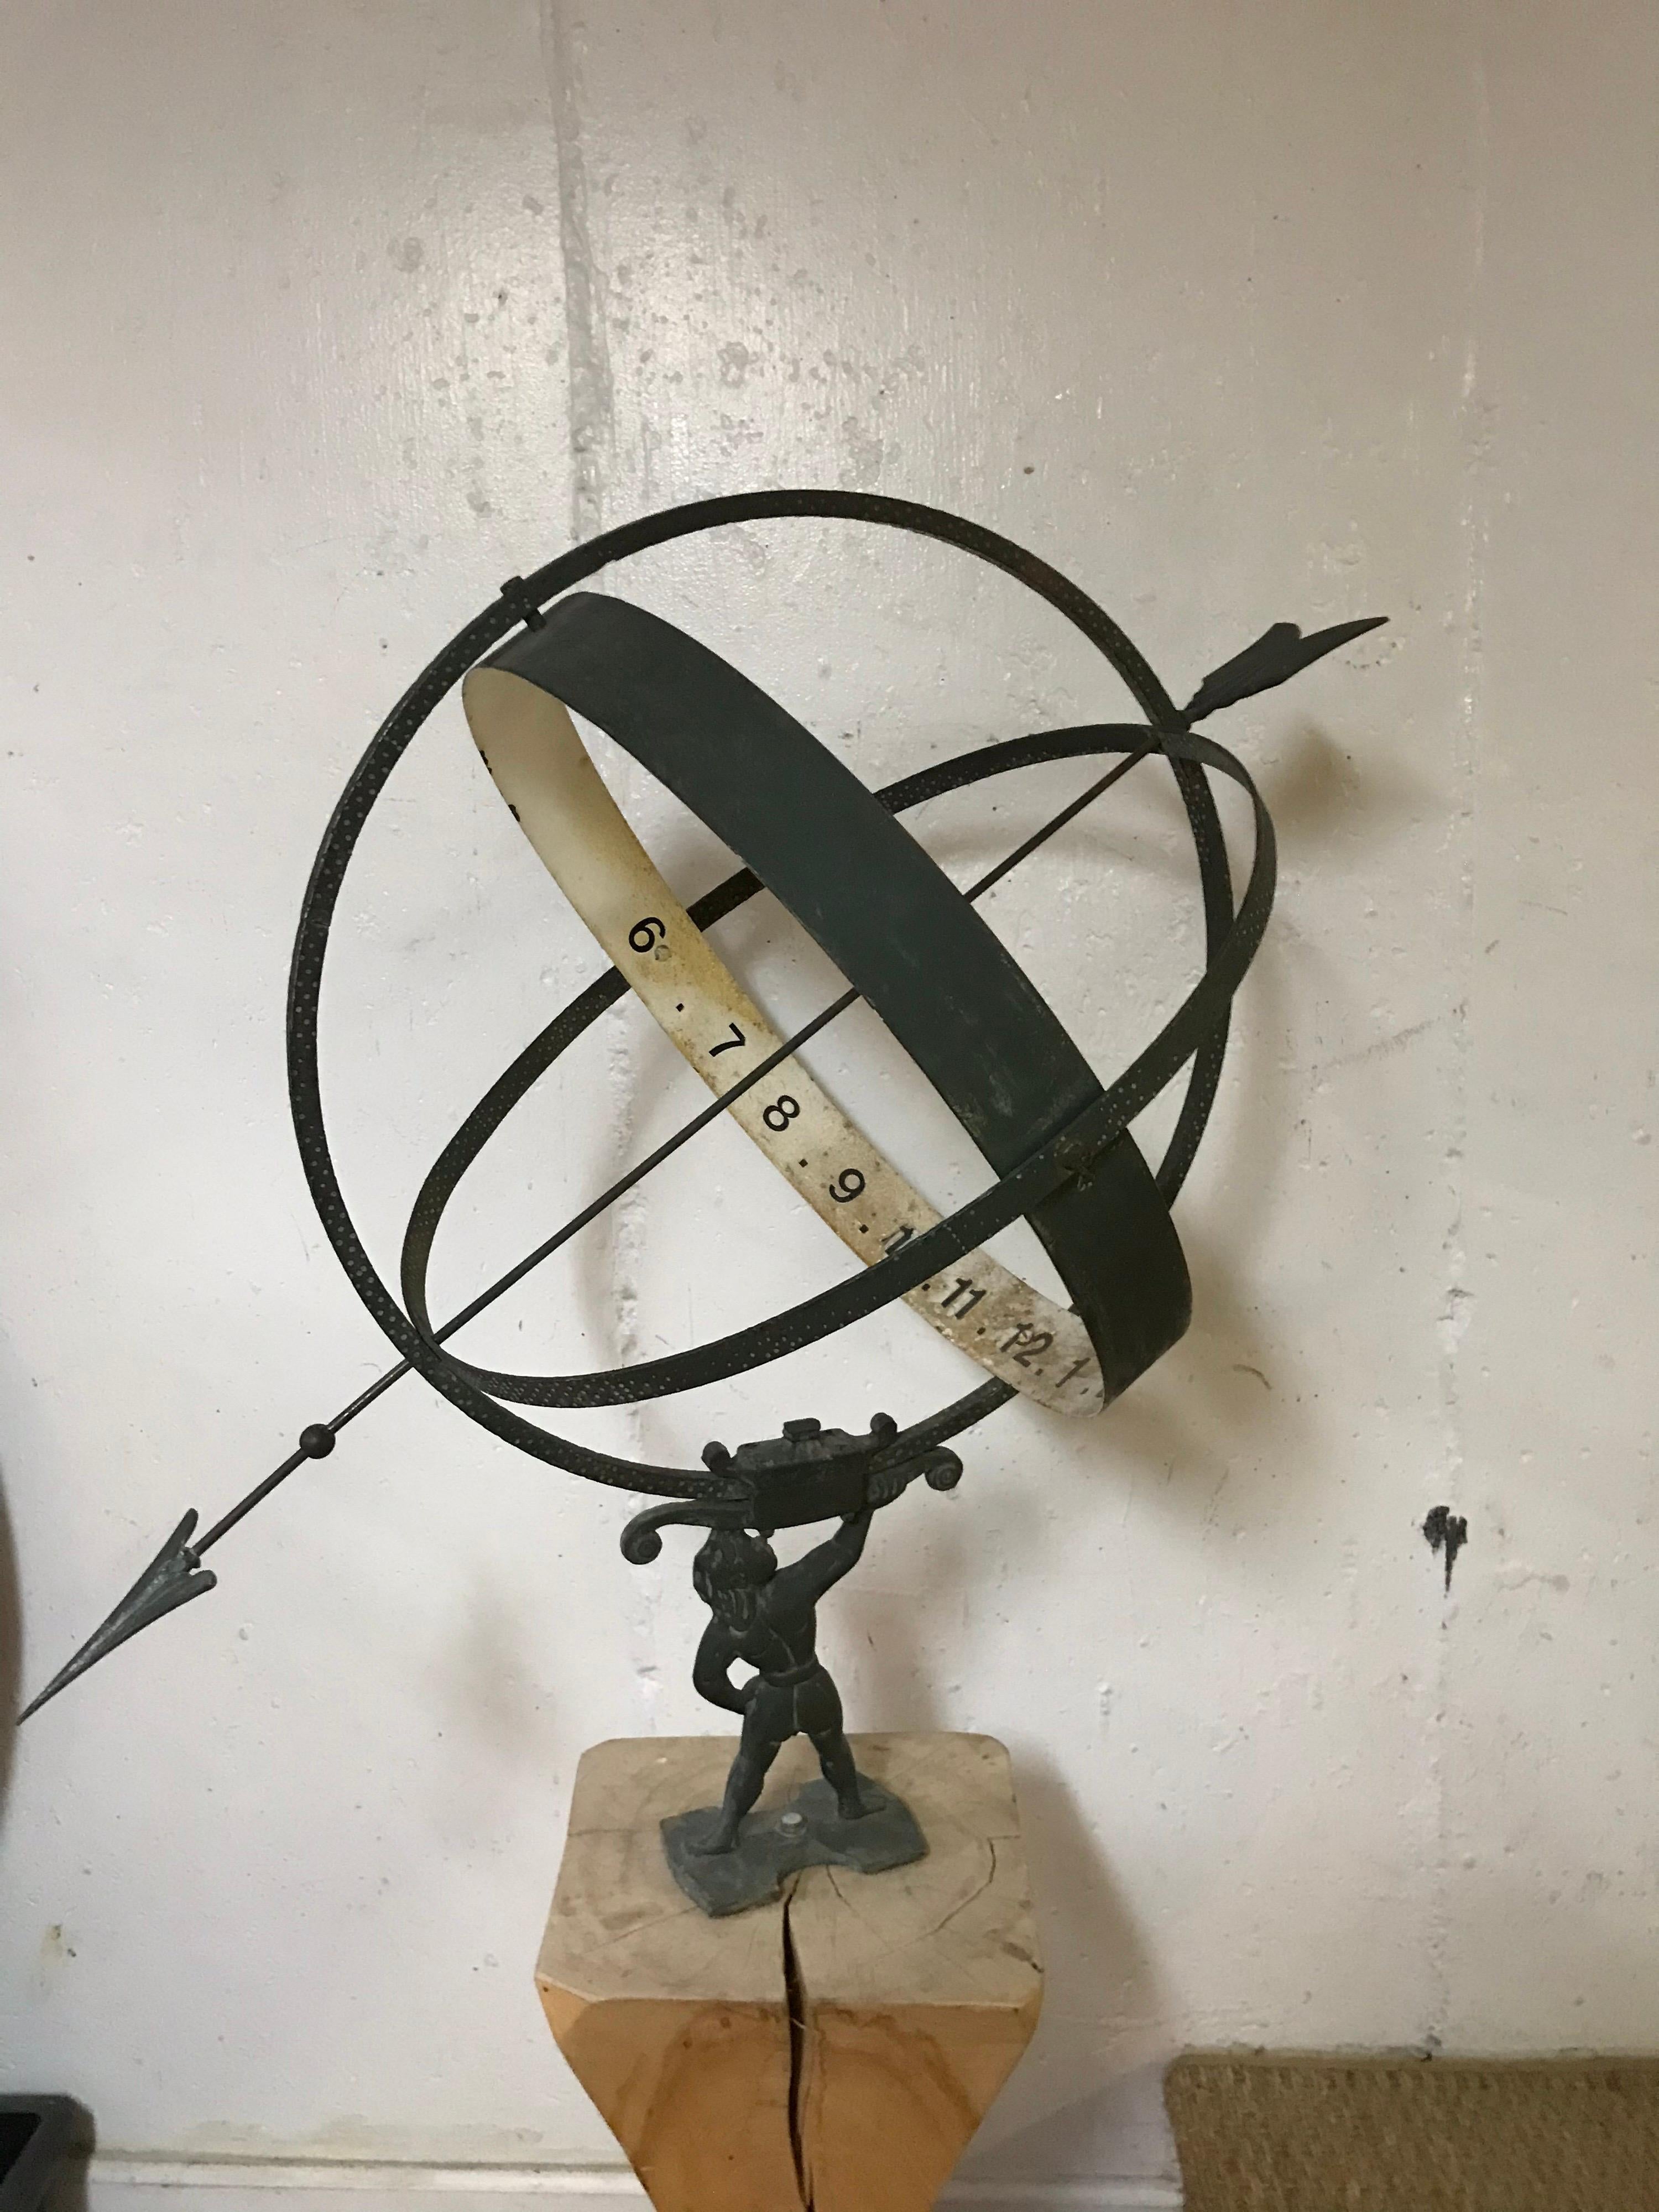 Dies ist ein Vintage-Metall schwedischen Armillar von Atlas auf einem Holzsockel montiert.
Die Armillarsphäre wird auf dem Arm des Atlas getragen und ist mit Ziffern beschriftet. Die Nummern scheinen nicht die Originale zu sein. Die Armillarsphäre